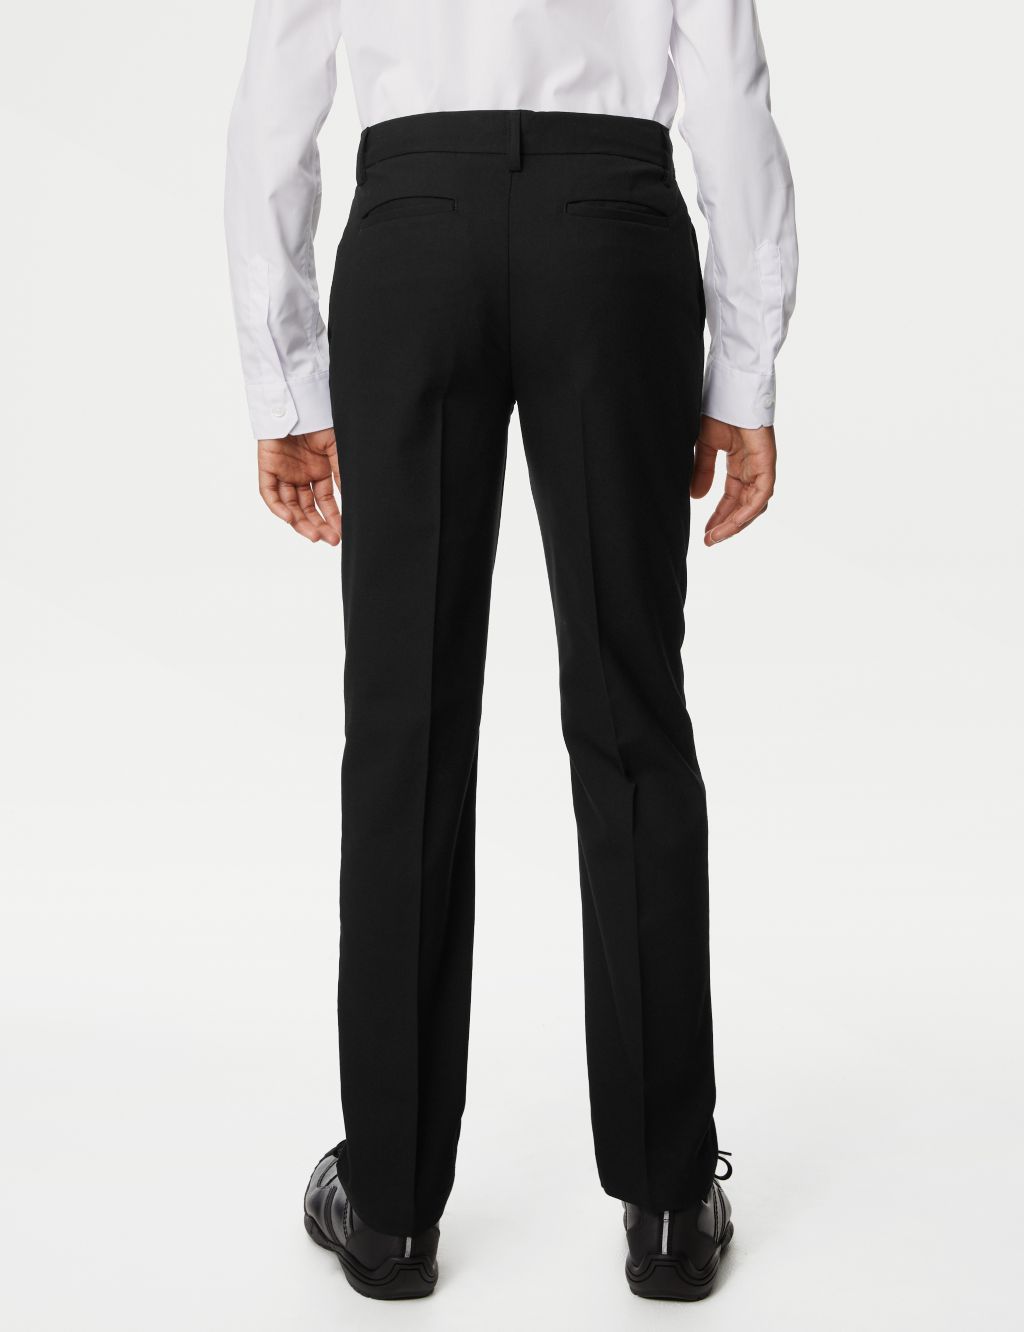 Boys' Slim Leg Slim Waist School Trousers (2-18 Yrs) image 4